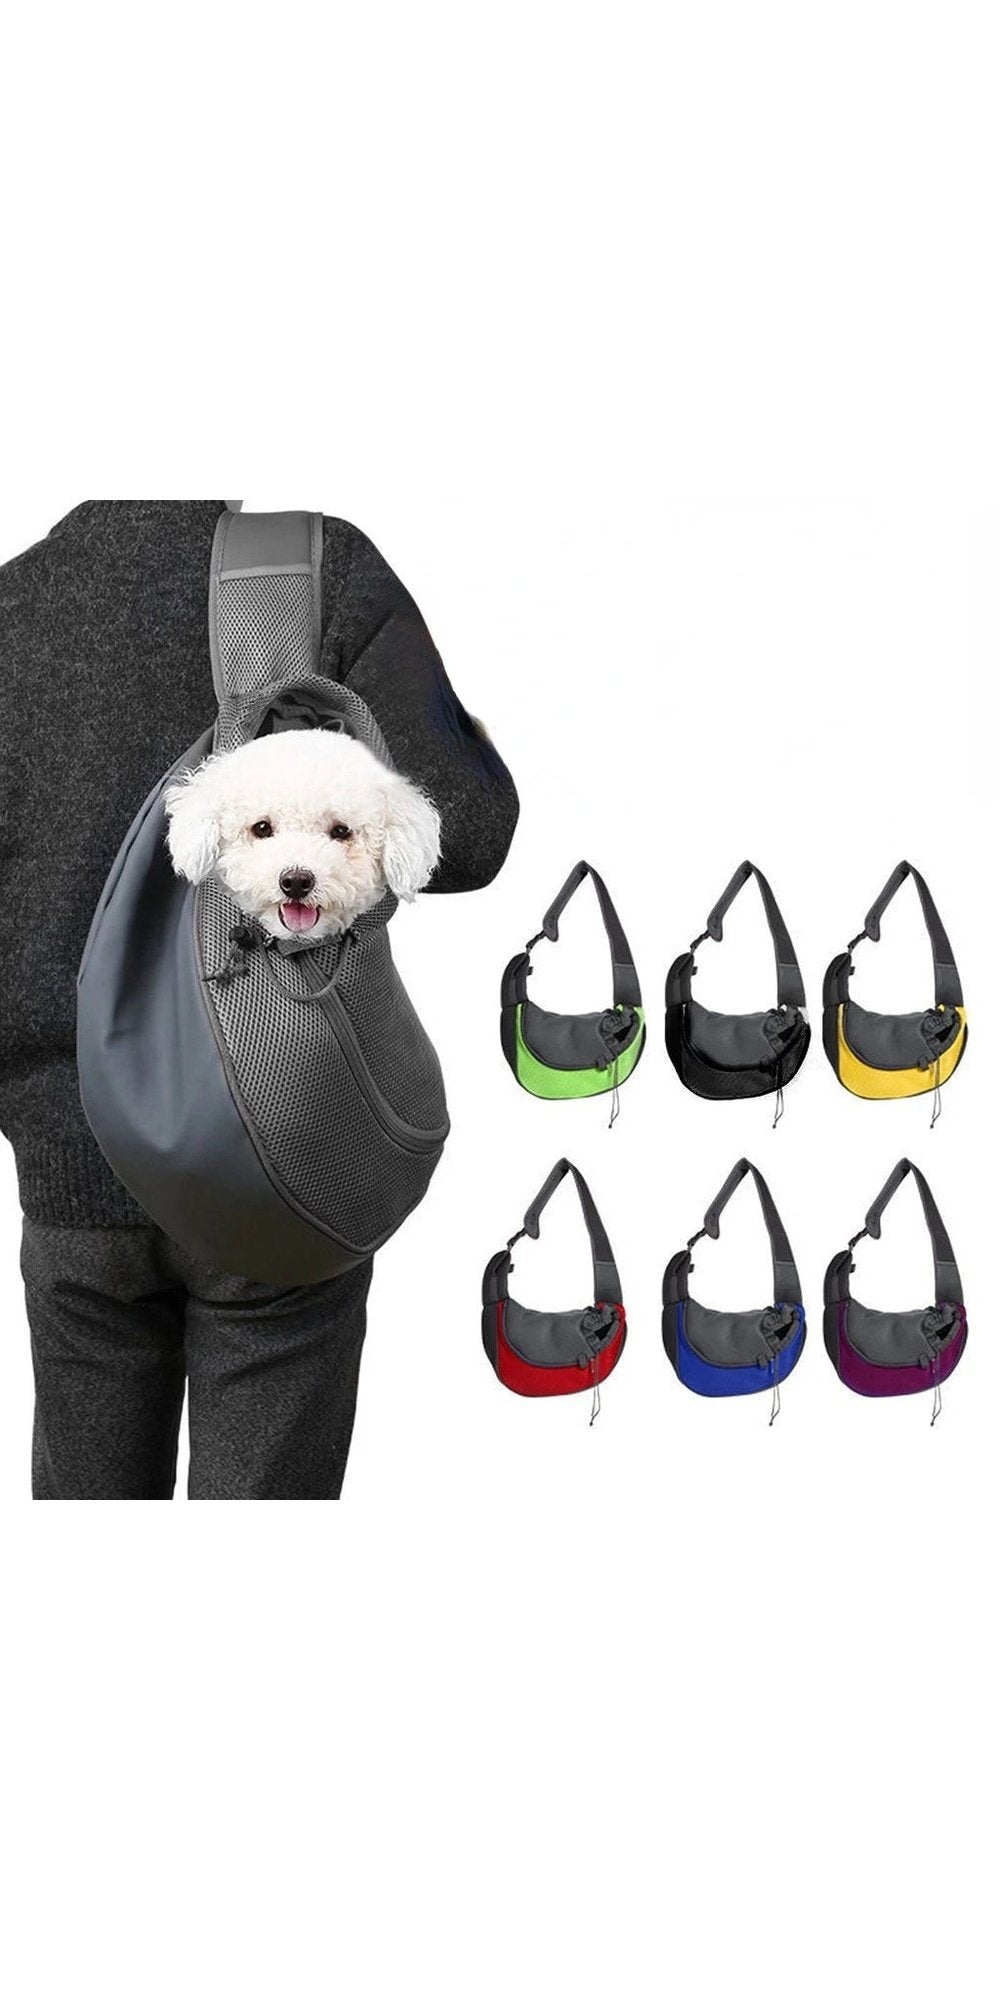 Portable Dog Bag Pet Bags Cat Carrier Travel Diagonal Shoulder Bag Adjustable Strap Breathable Mesh Pet Backpack Pet Supplies